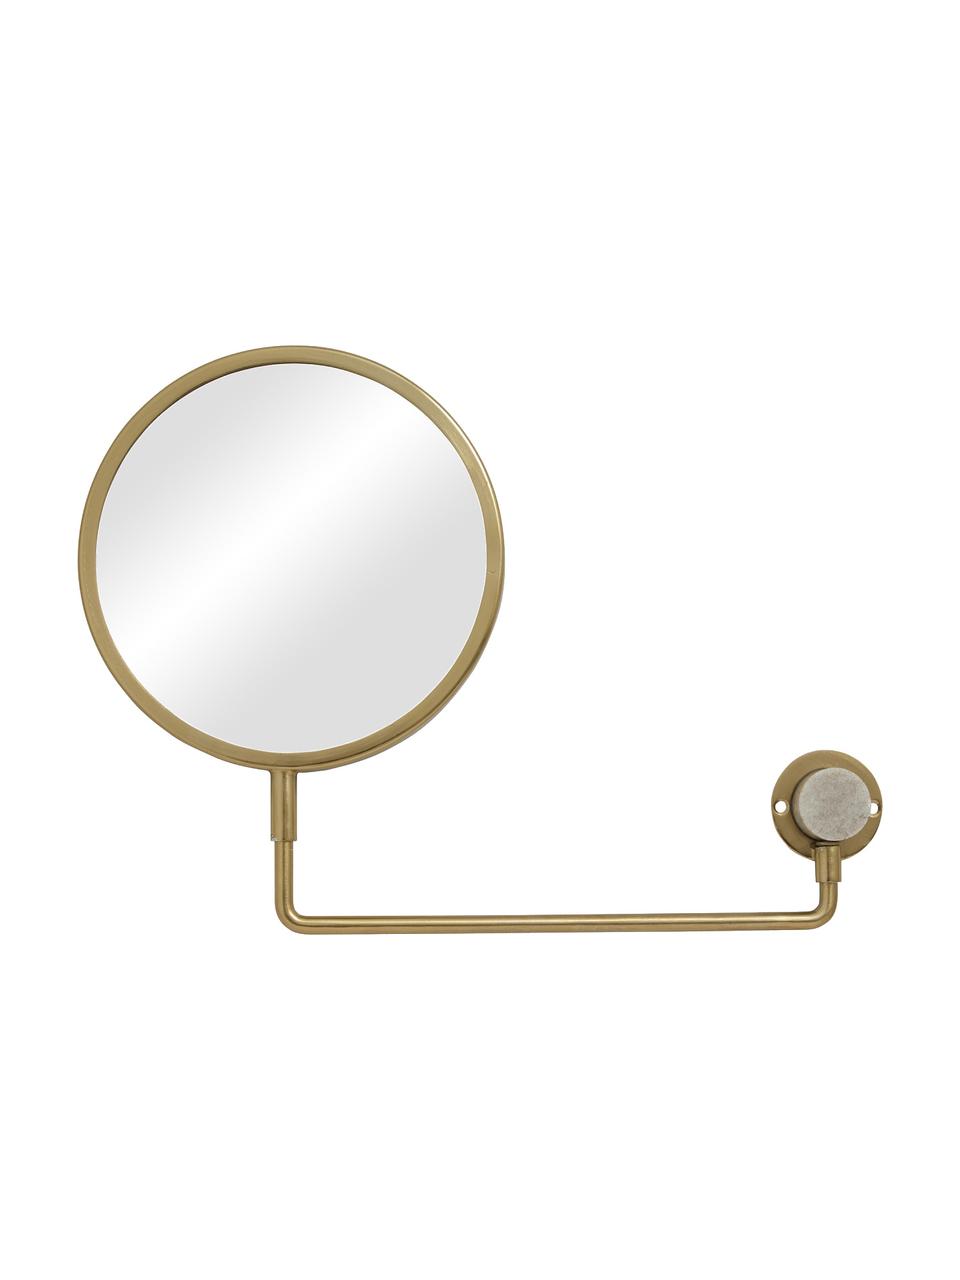 Verstellbarer Wandspiegel Tesia mit Vergrößerung, Rahmen: Metall, Spiegelfläche: Spiegelglas, Dekor: Marmor, Goldfarben, B 39 x H 27 cm